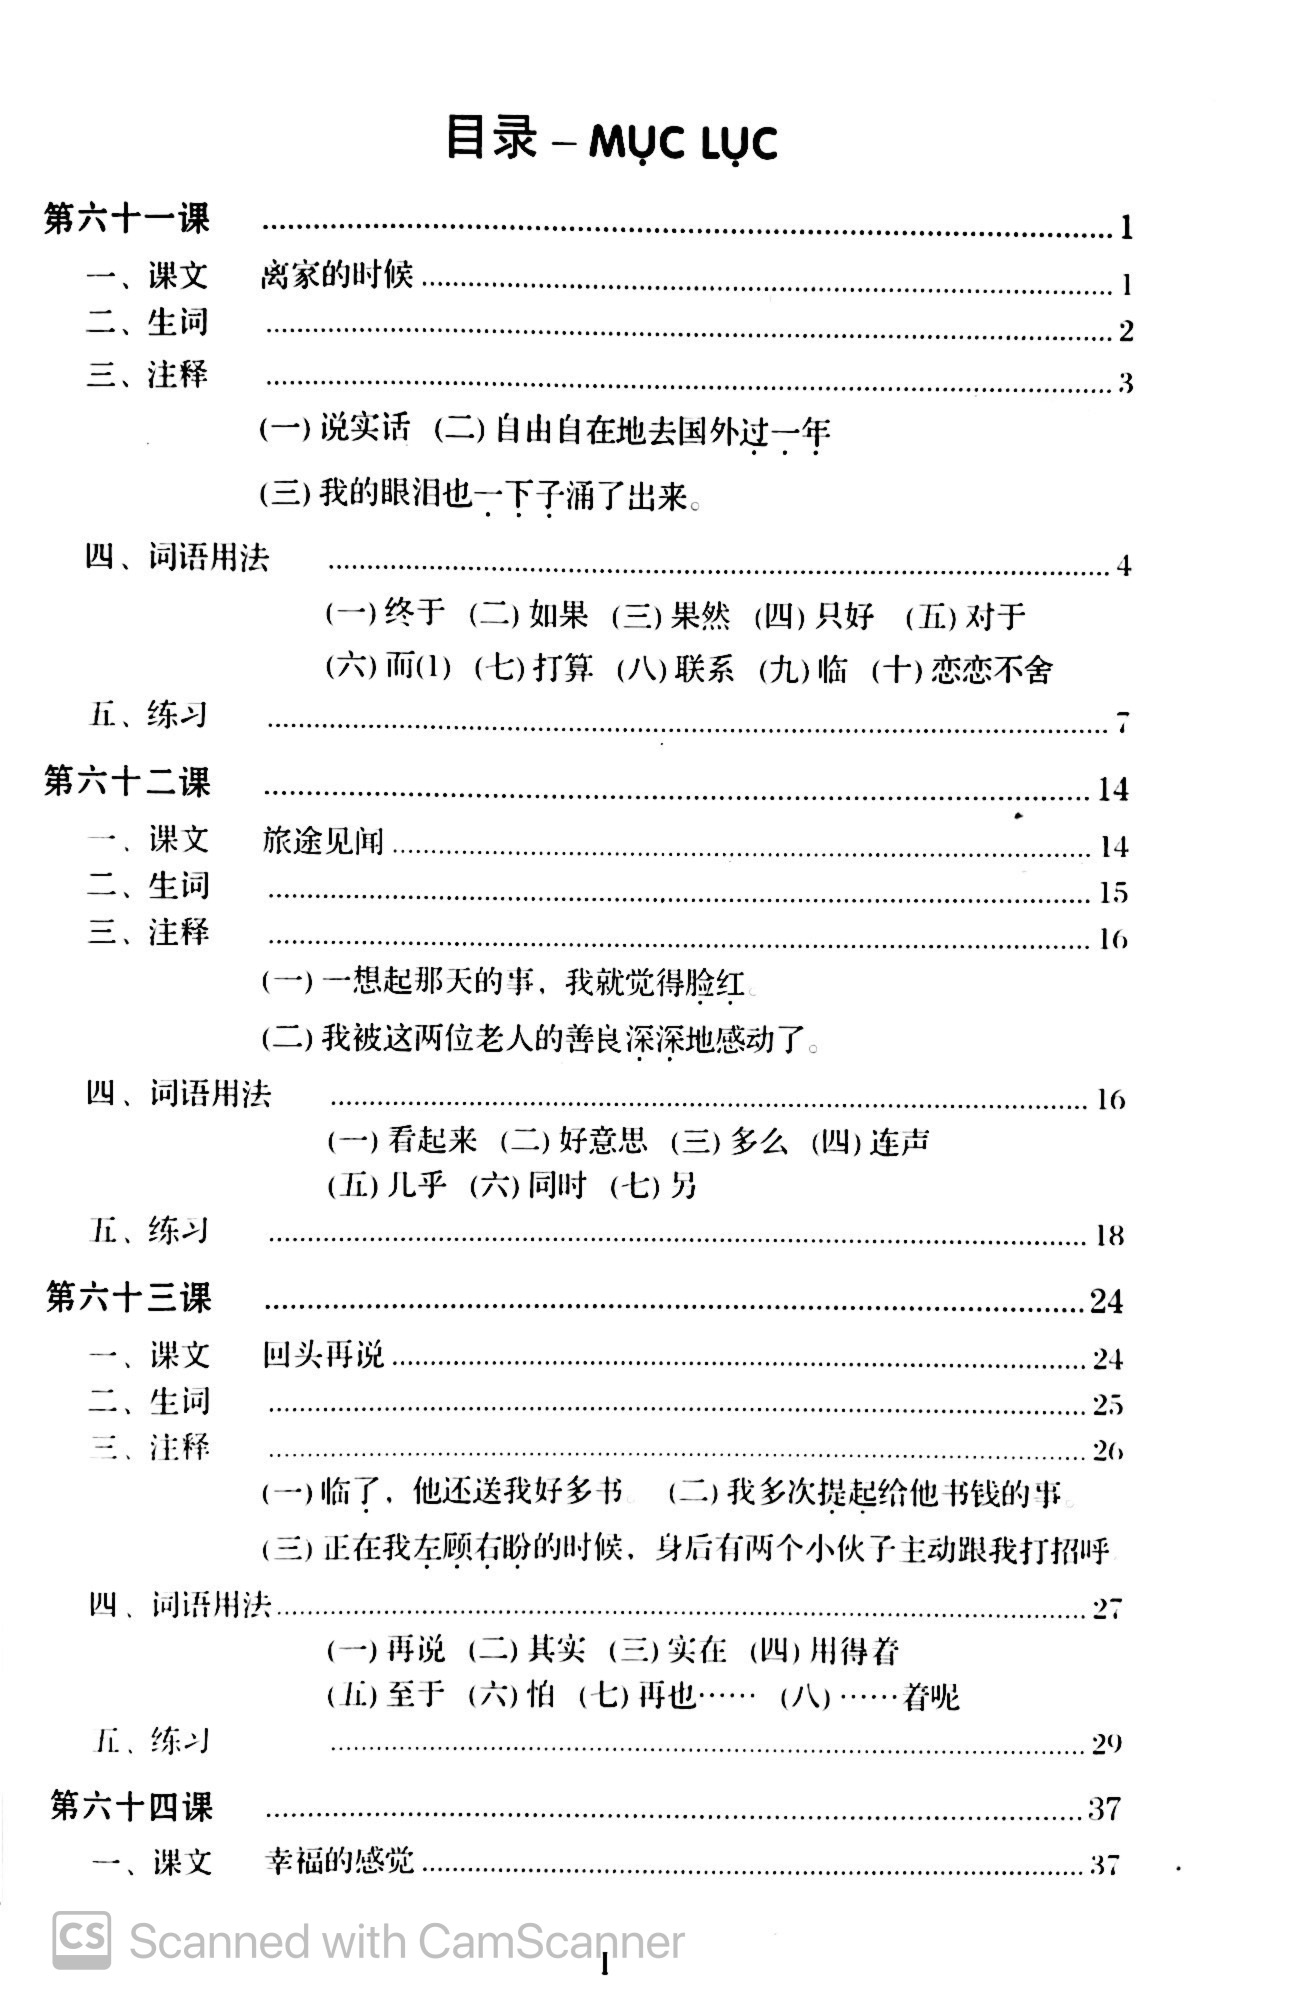 Giáo Trình Hán Ngữ - Tập 3 - Quyển 1 PDF